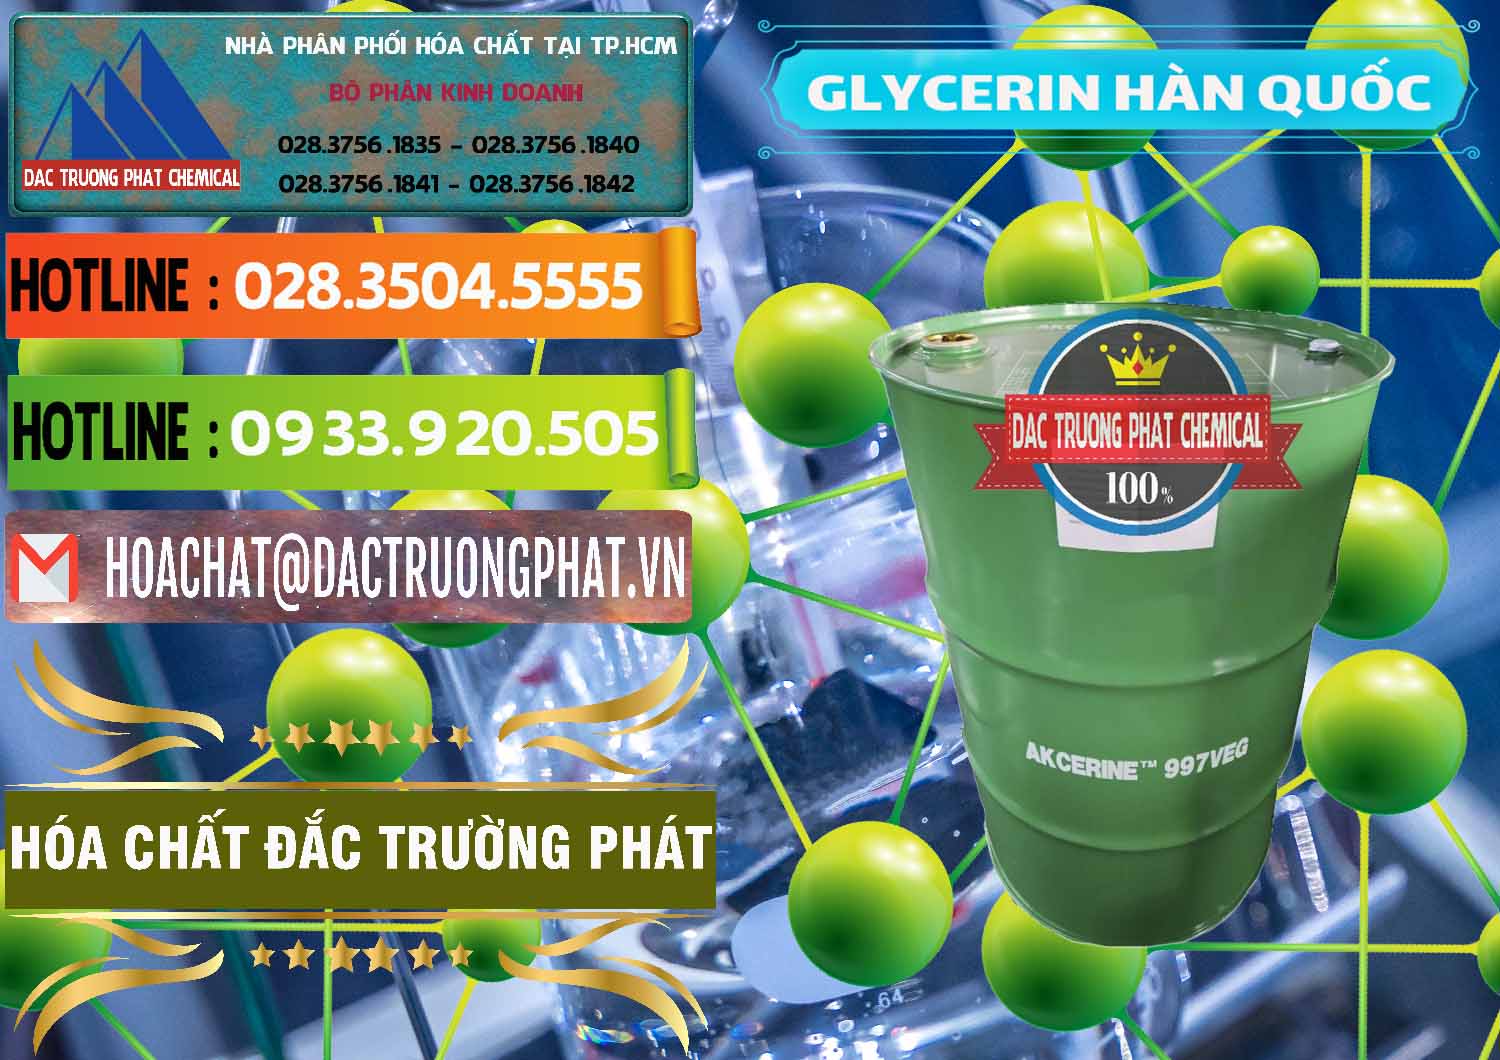 Cty chuyên bán _ cung ứng Glycerin – C3H8O3 Hàn Quốc Korea - 0403 - Chuyên kinh doanh và cung cấp hóa chất tại TP.HCM - cungcaphoachat.com.vn